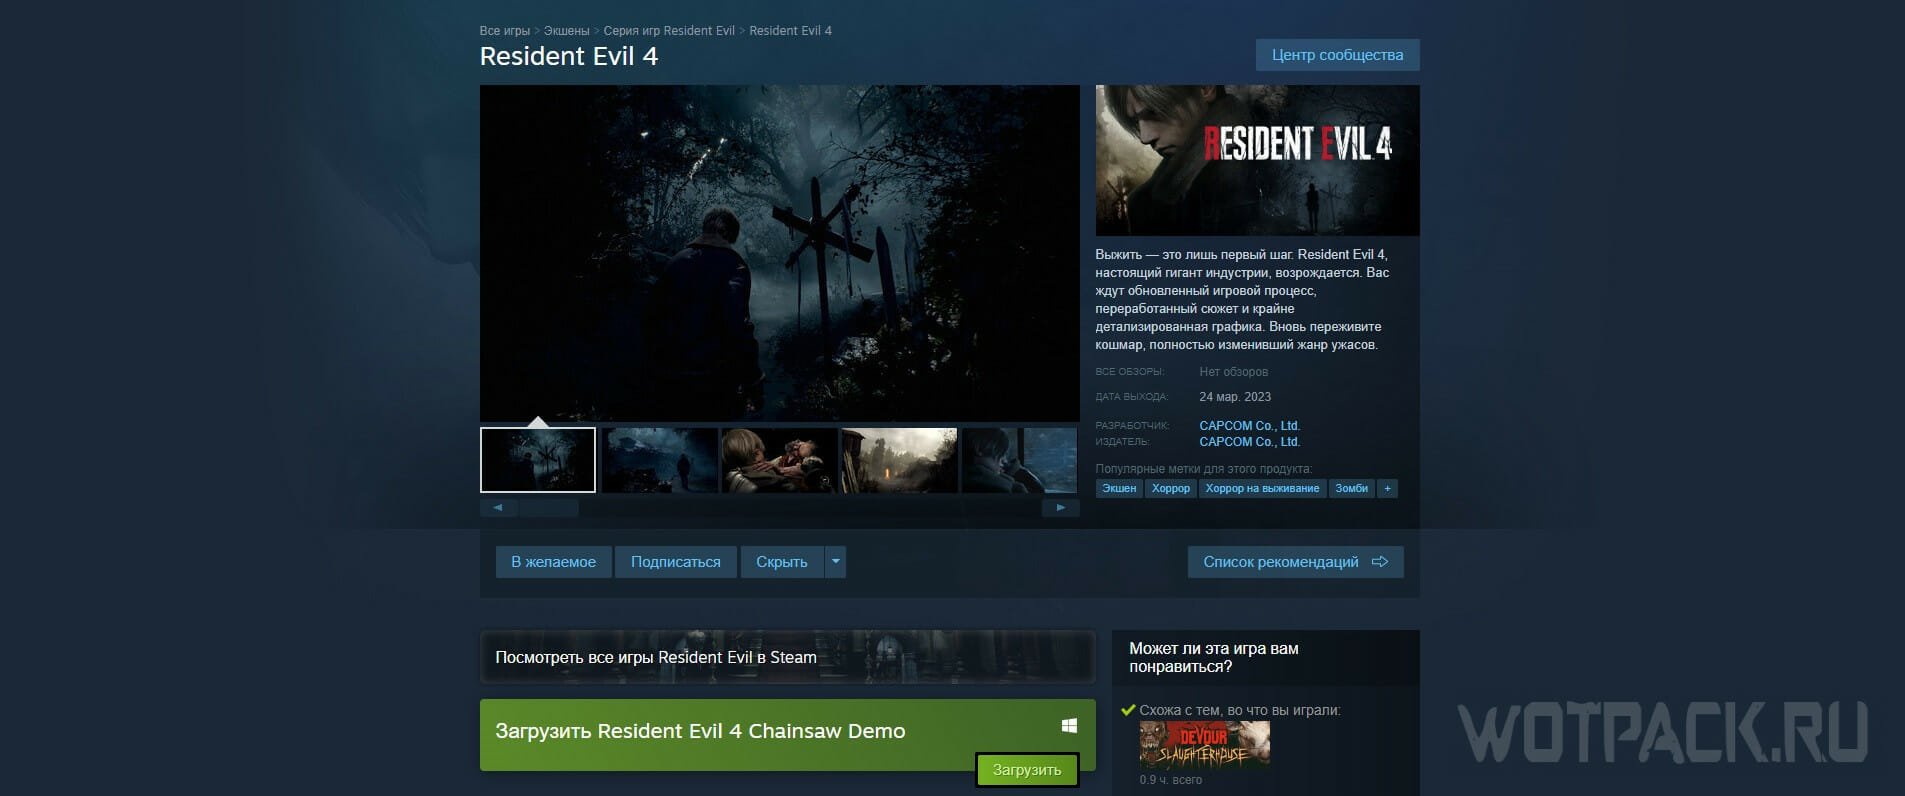 Voorloper Waden microfoon Resident Evil 4 Remake kopen in Rusland op pc, PS4/PS5 en Xbox